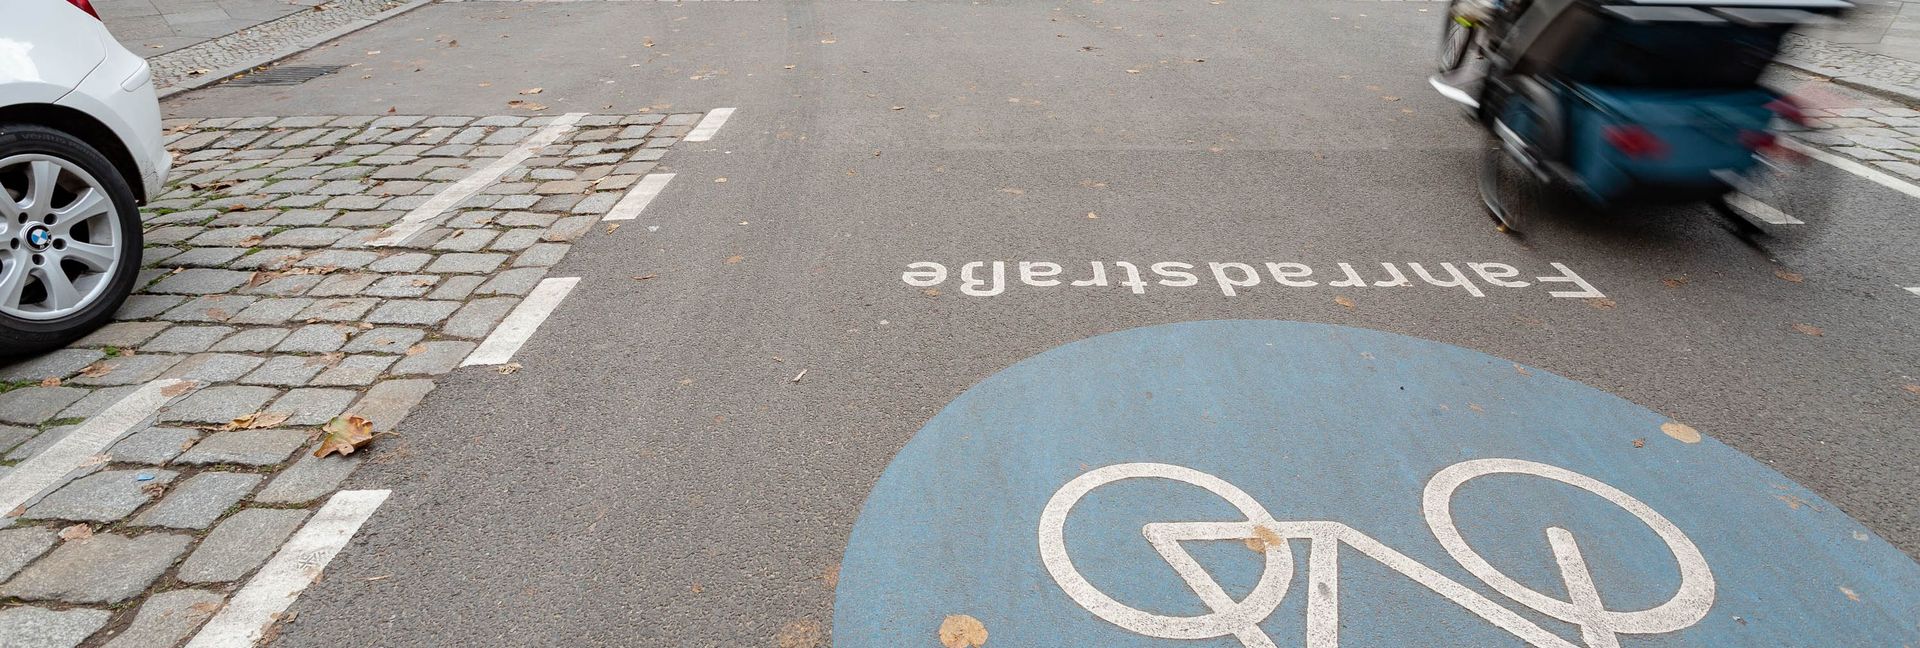 Fahrradstraße in Neukölln mit Fahrrad-Piktogramm auf der Fahrbahn